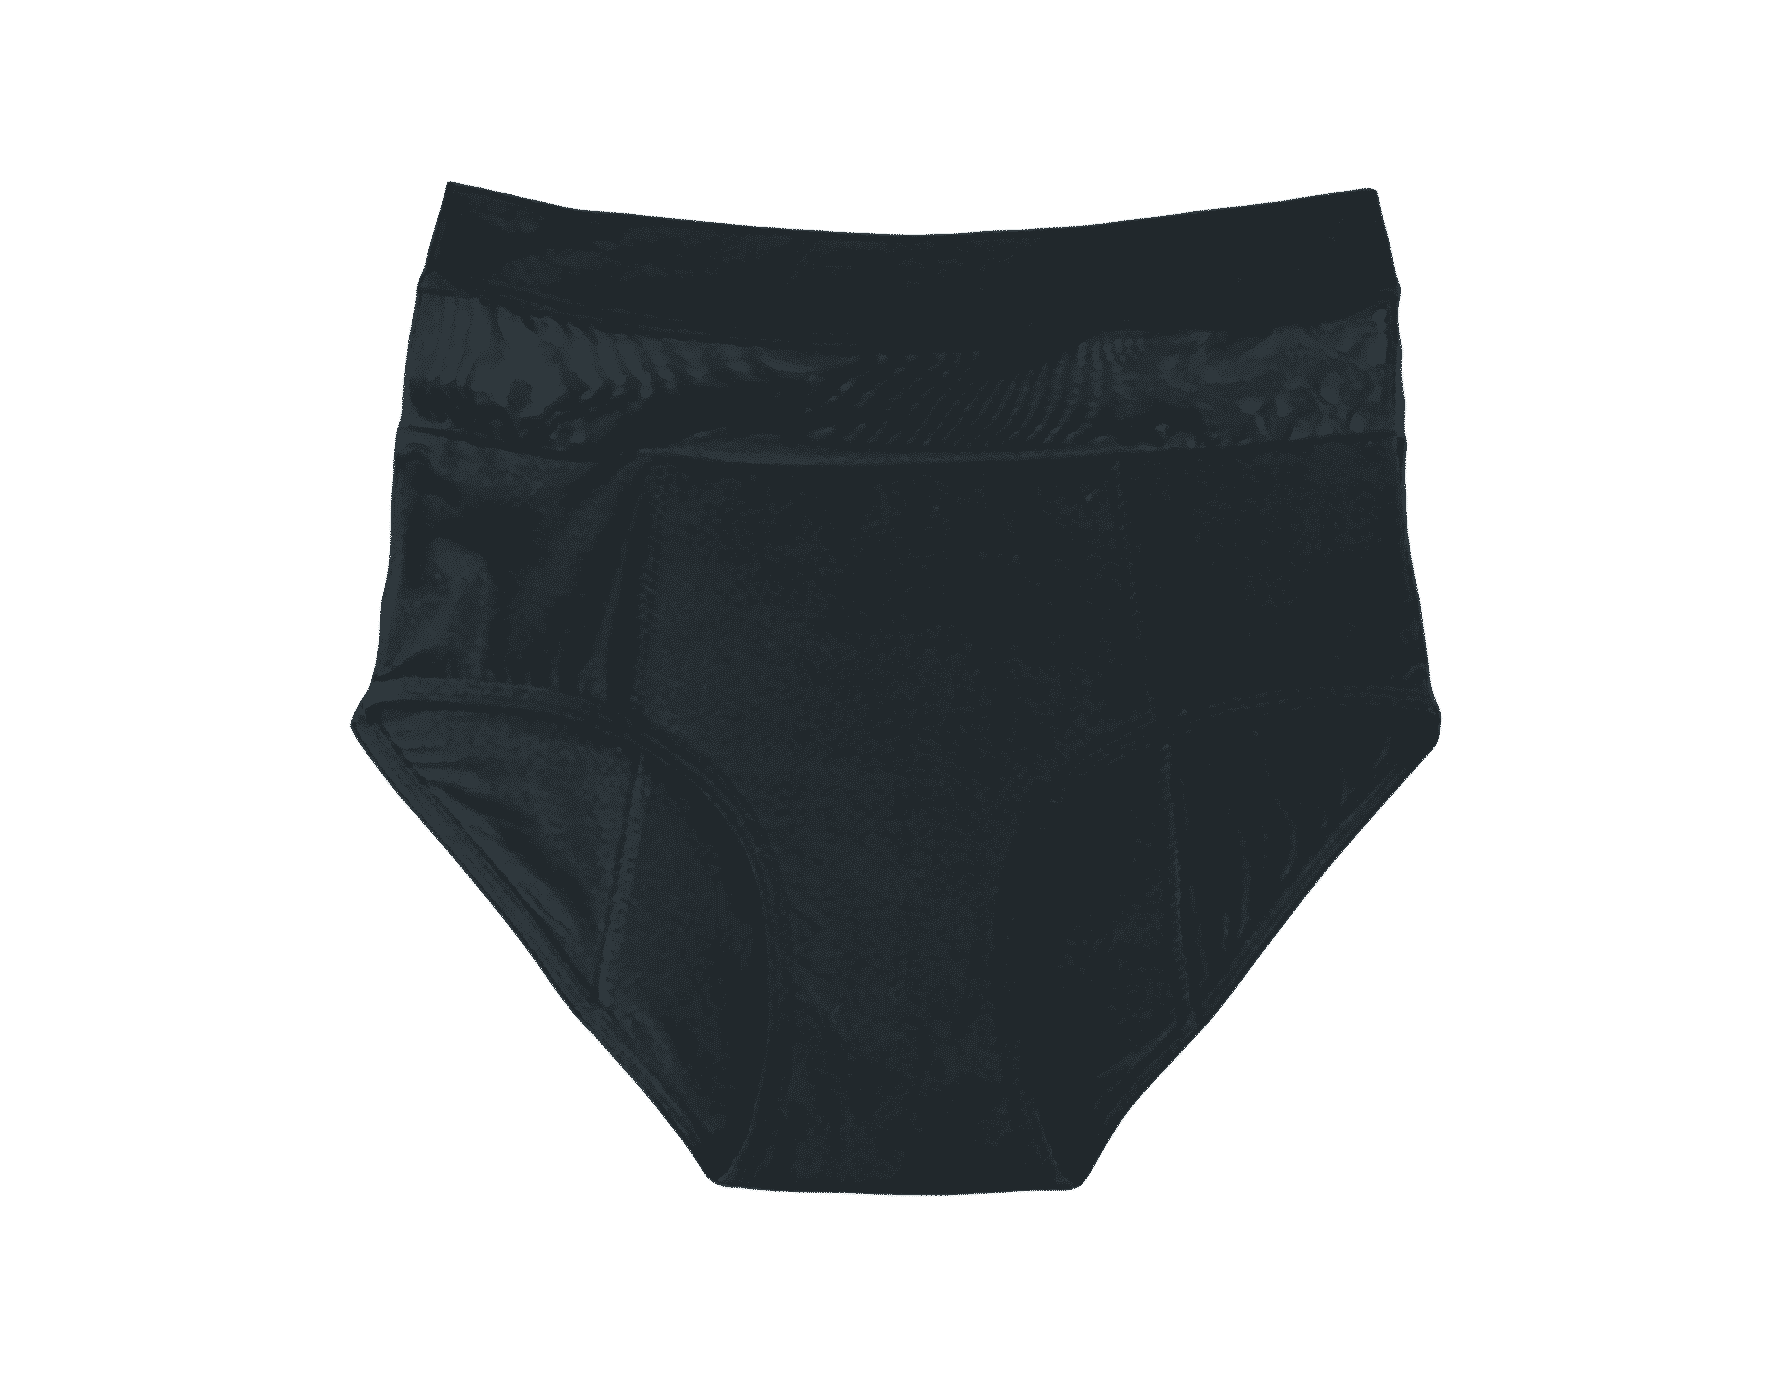 Cora Female Period Underwear, Black, Oeko Tex Certified Material